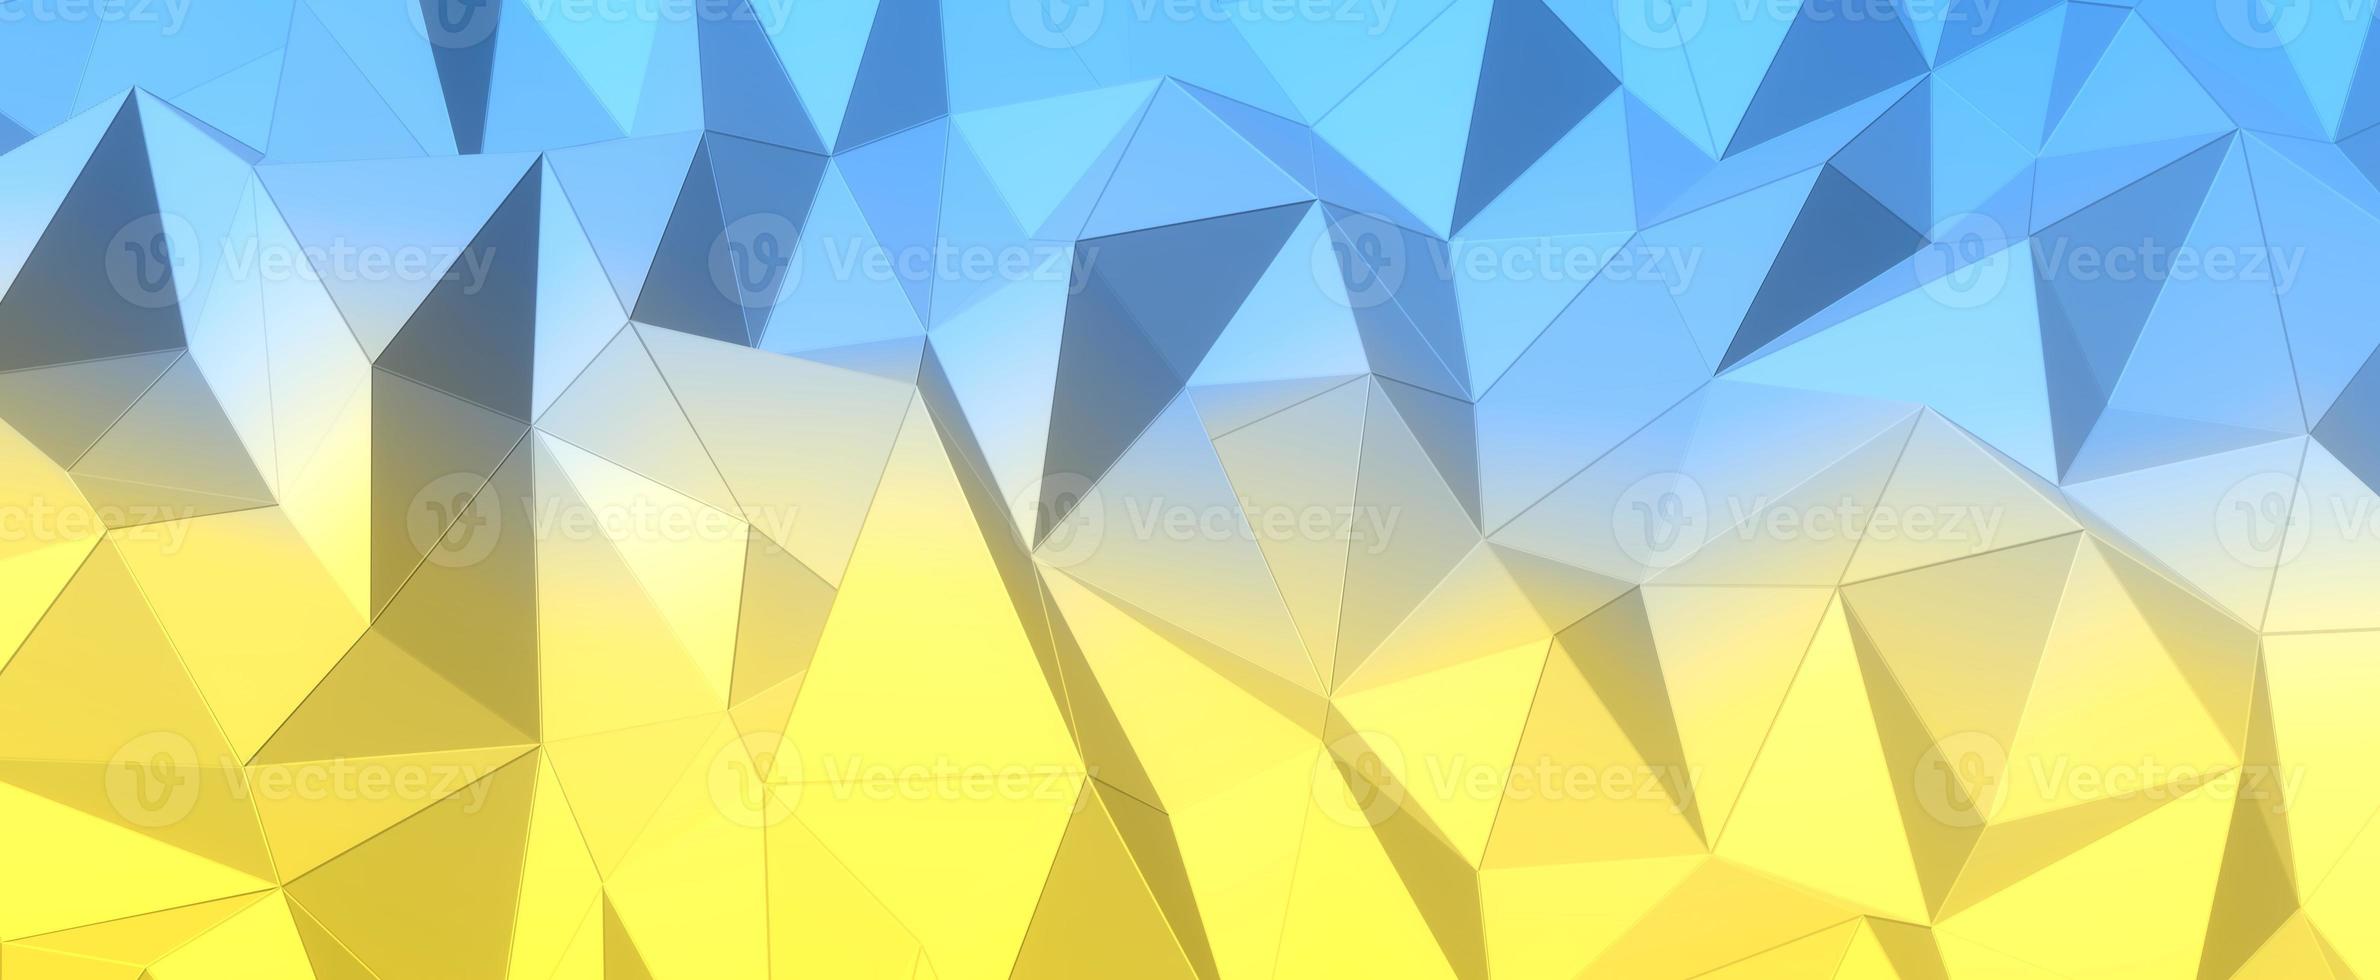 sfondo giallo blu poligonale. colori astratti della bandiera ucraina. colline geometriche con mesh di rendering 3d. trame digitali triangolari impilate in formazioni creative con interni futuristici foto